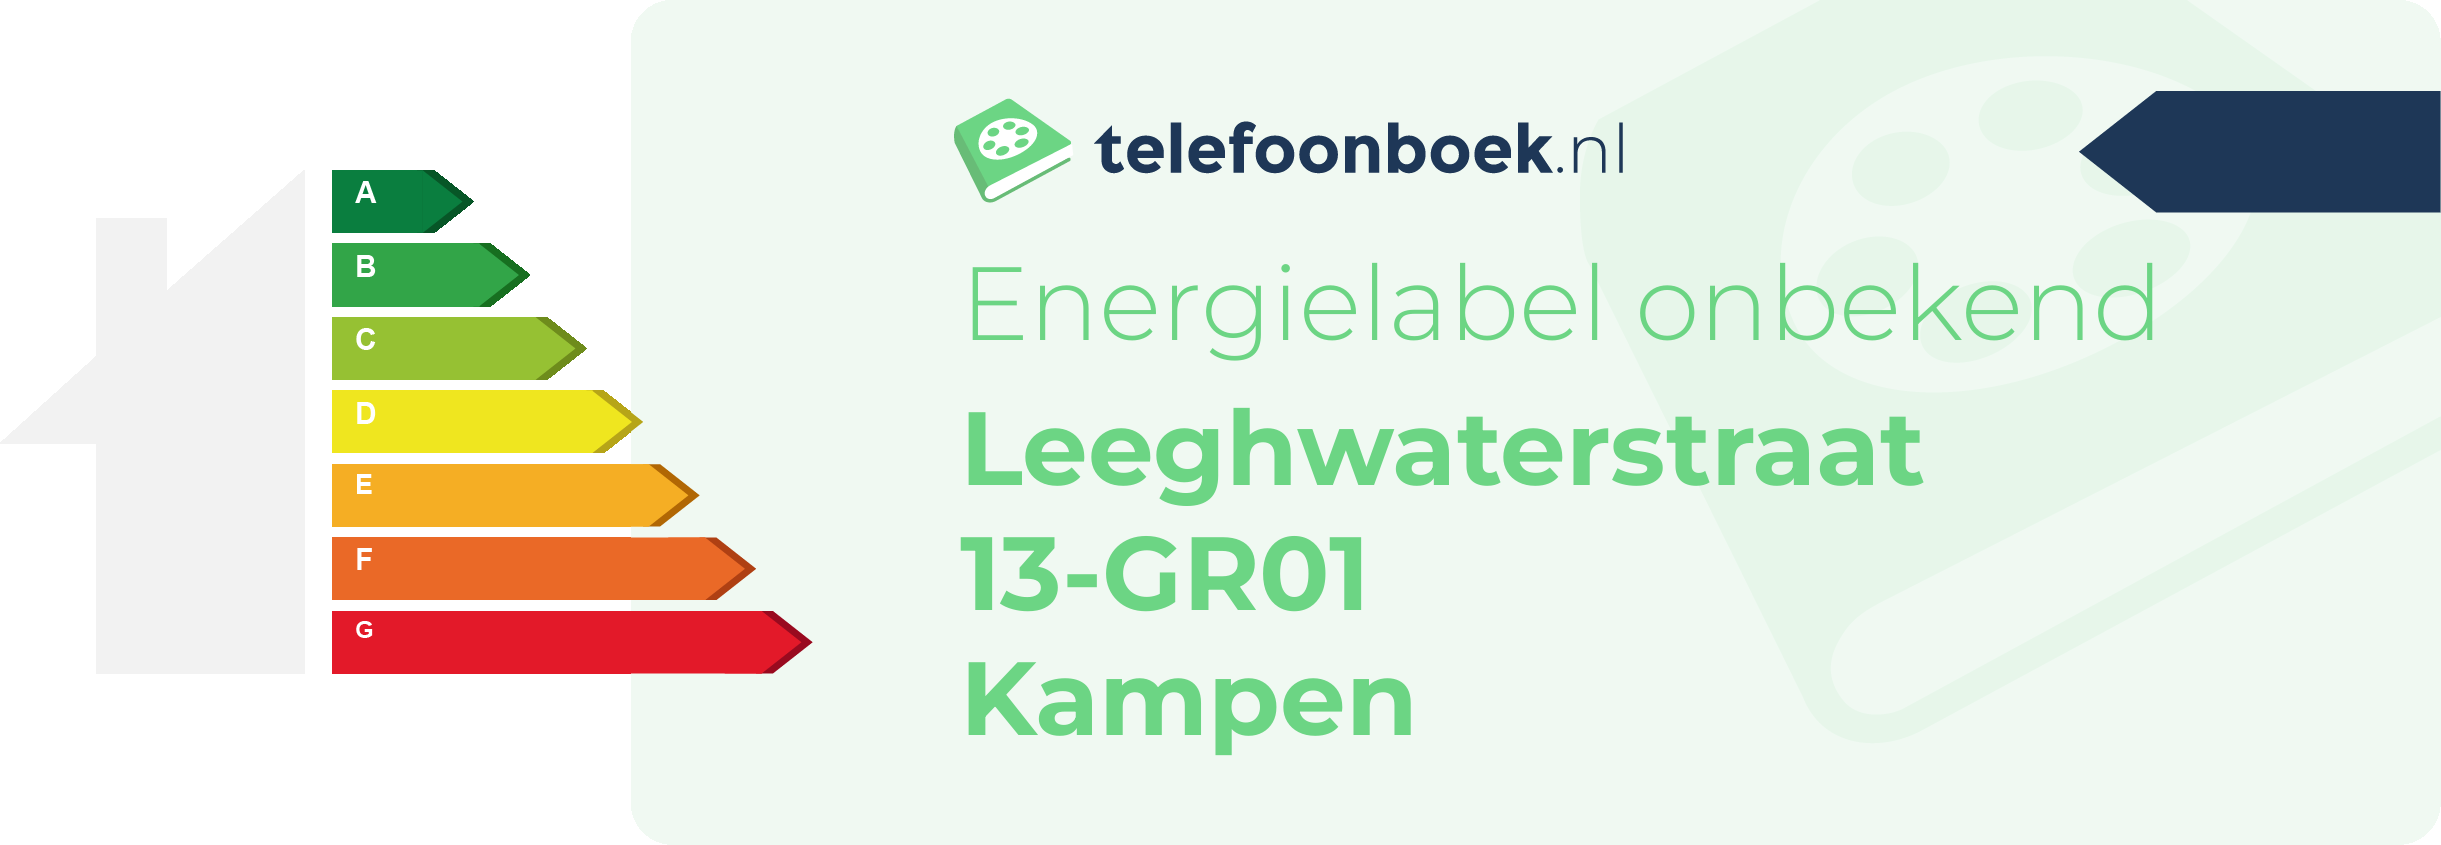 Energielabel Leeghwaterstraat 13-GR01 Kampen